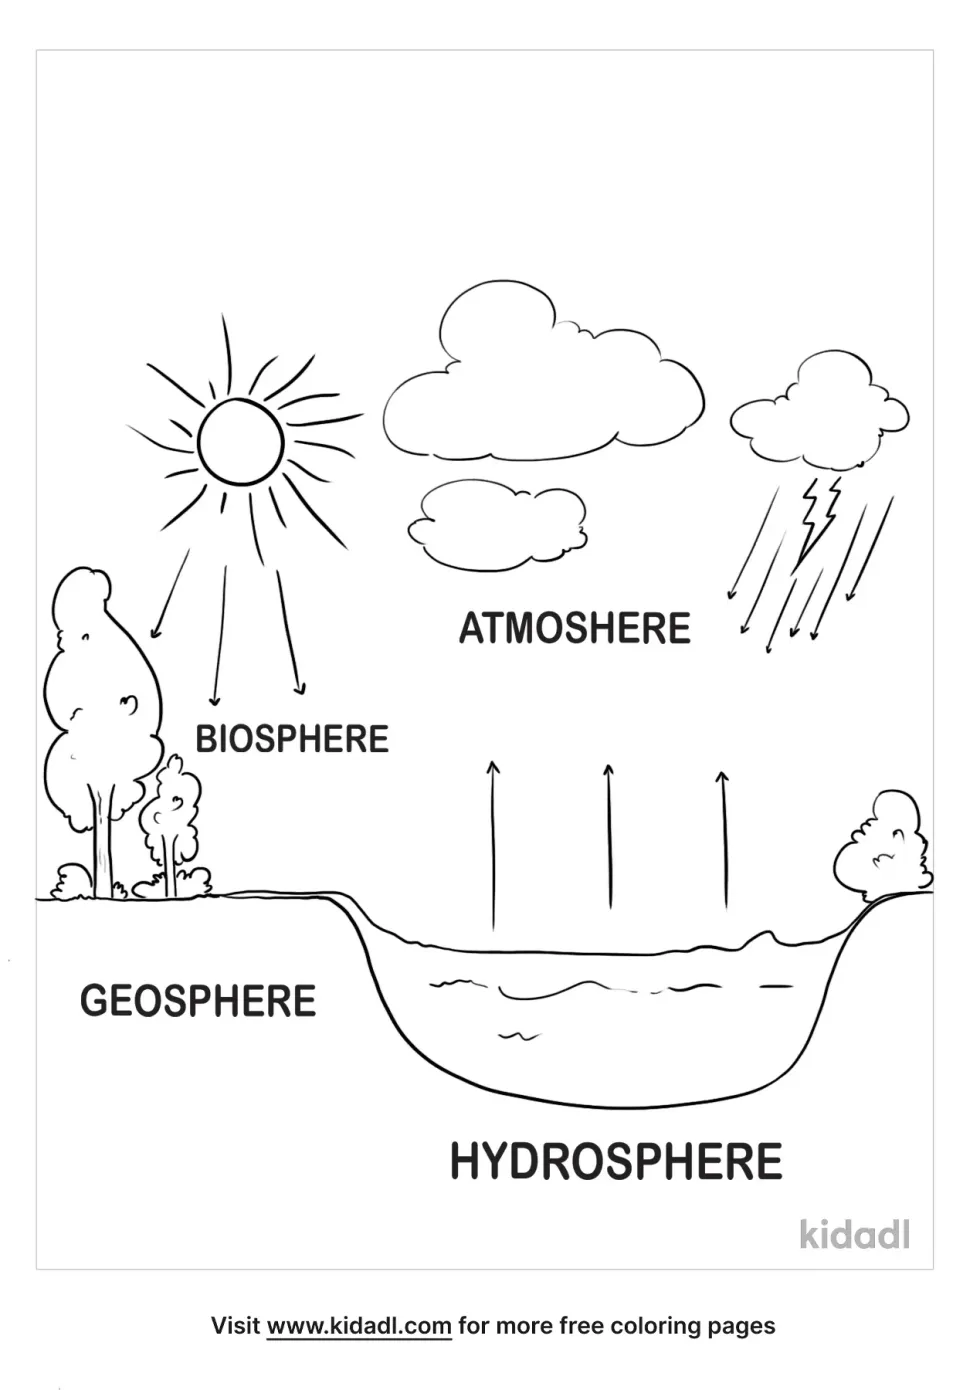 Hydrosphere Biosphere Geosphere